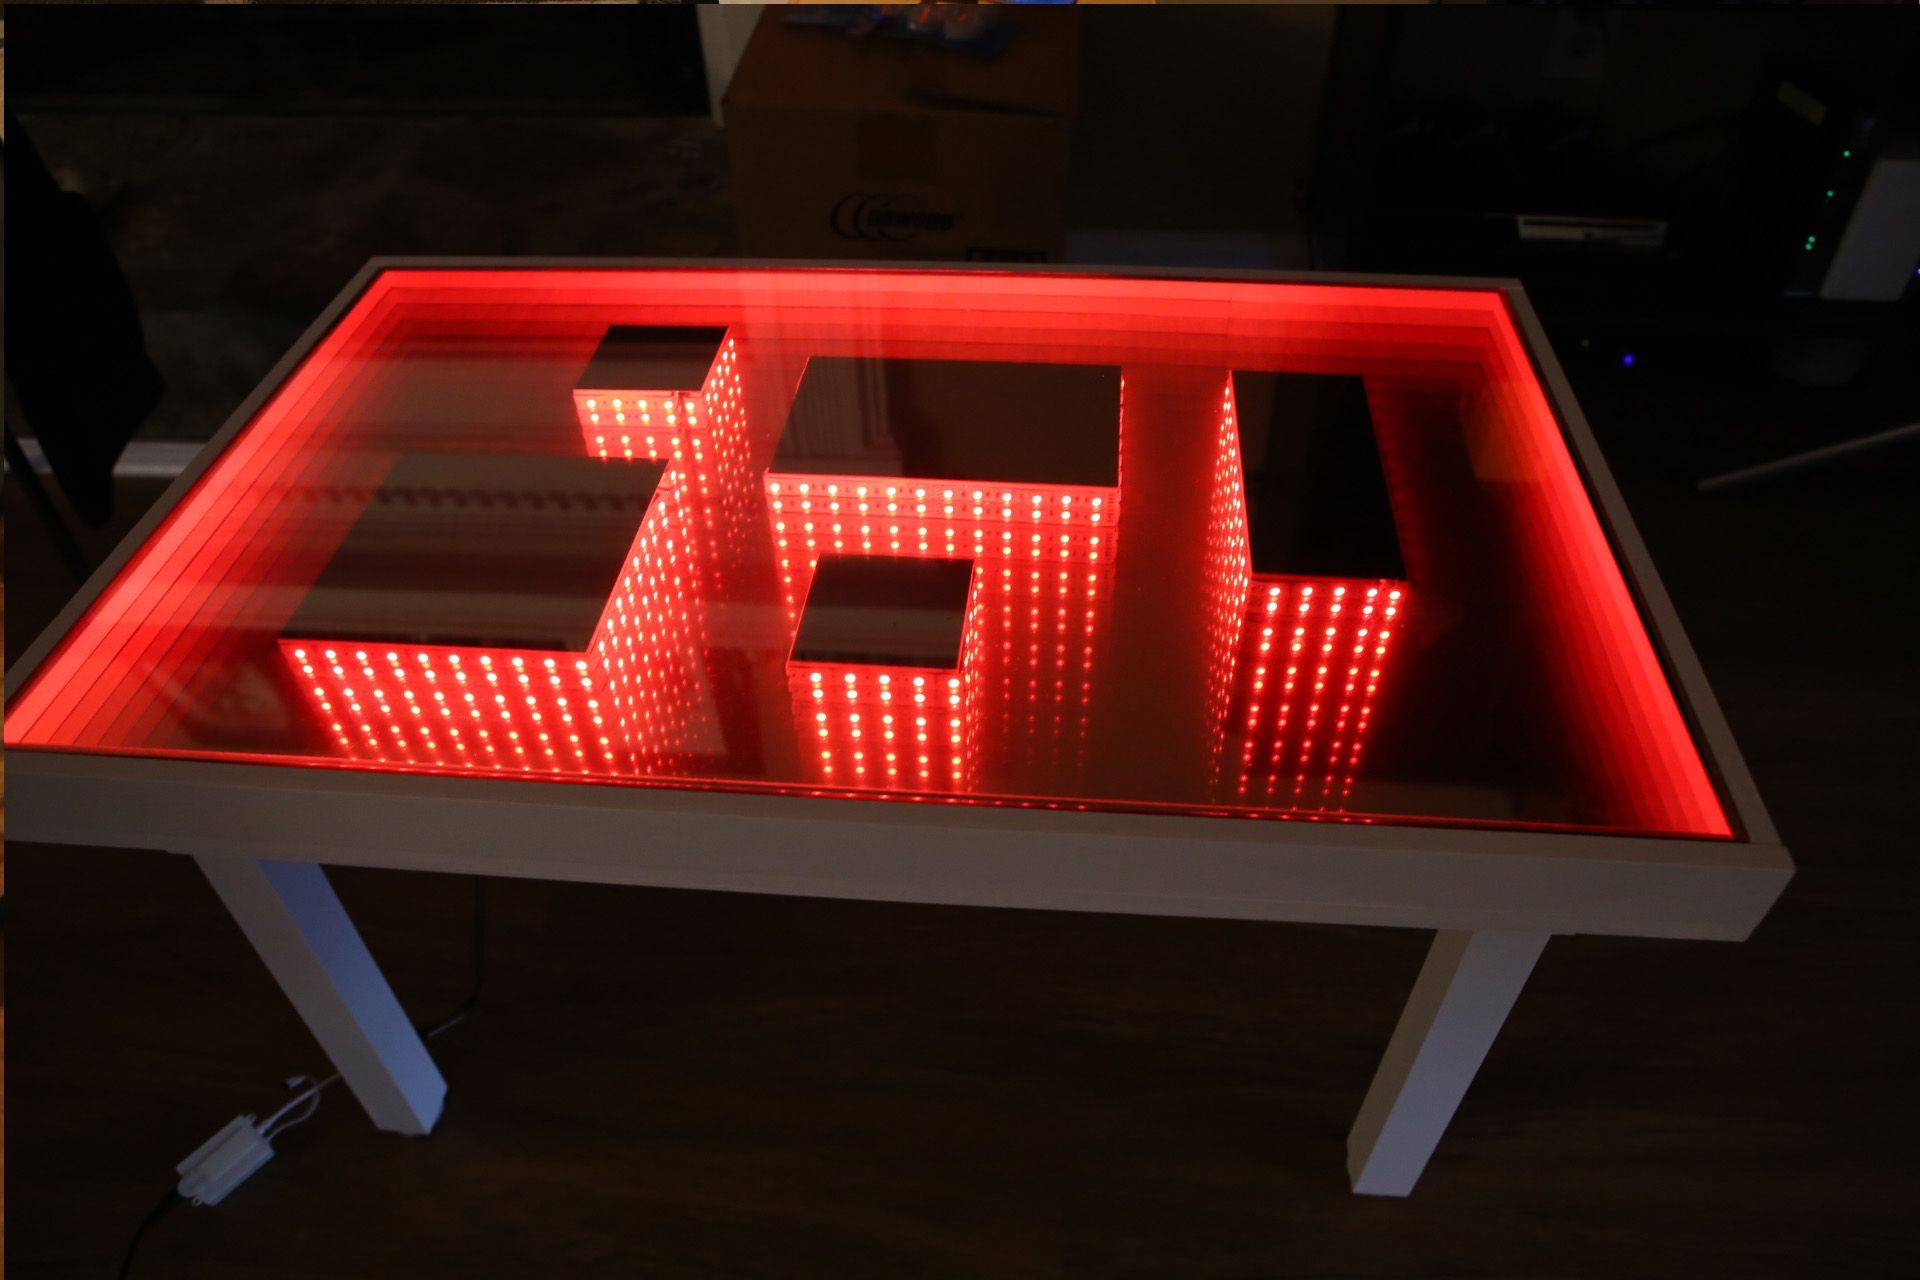 Секреты конструкции стола с эффектом бесконечности, виды подсветки